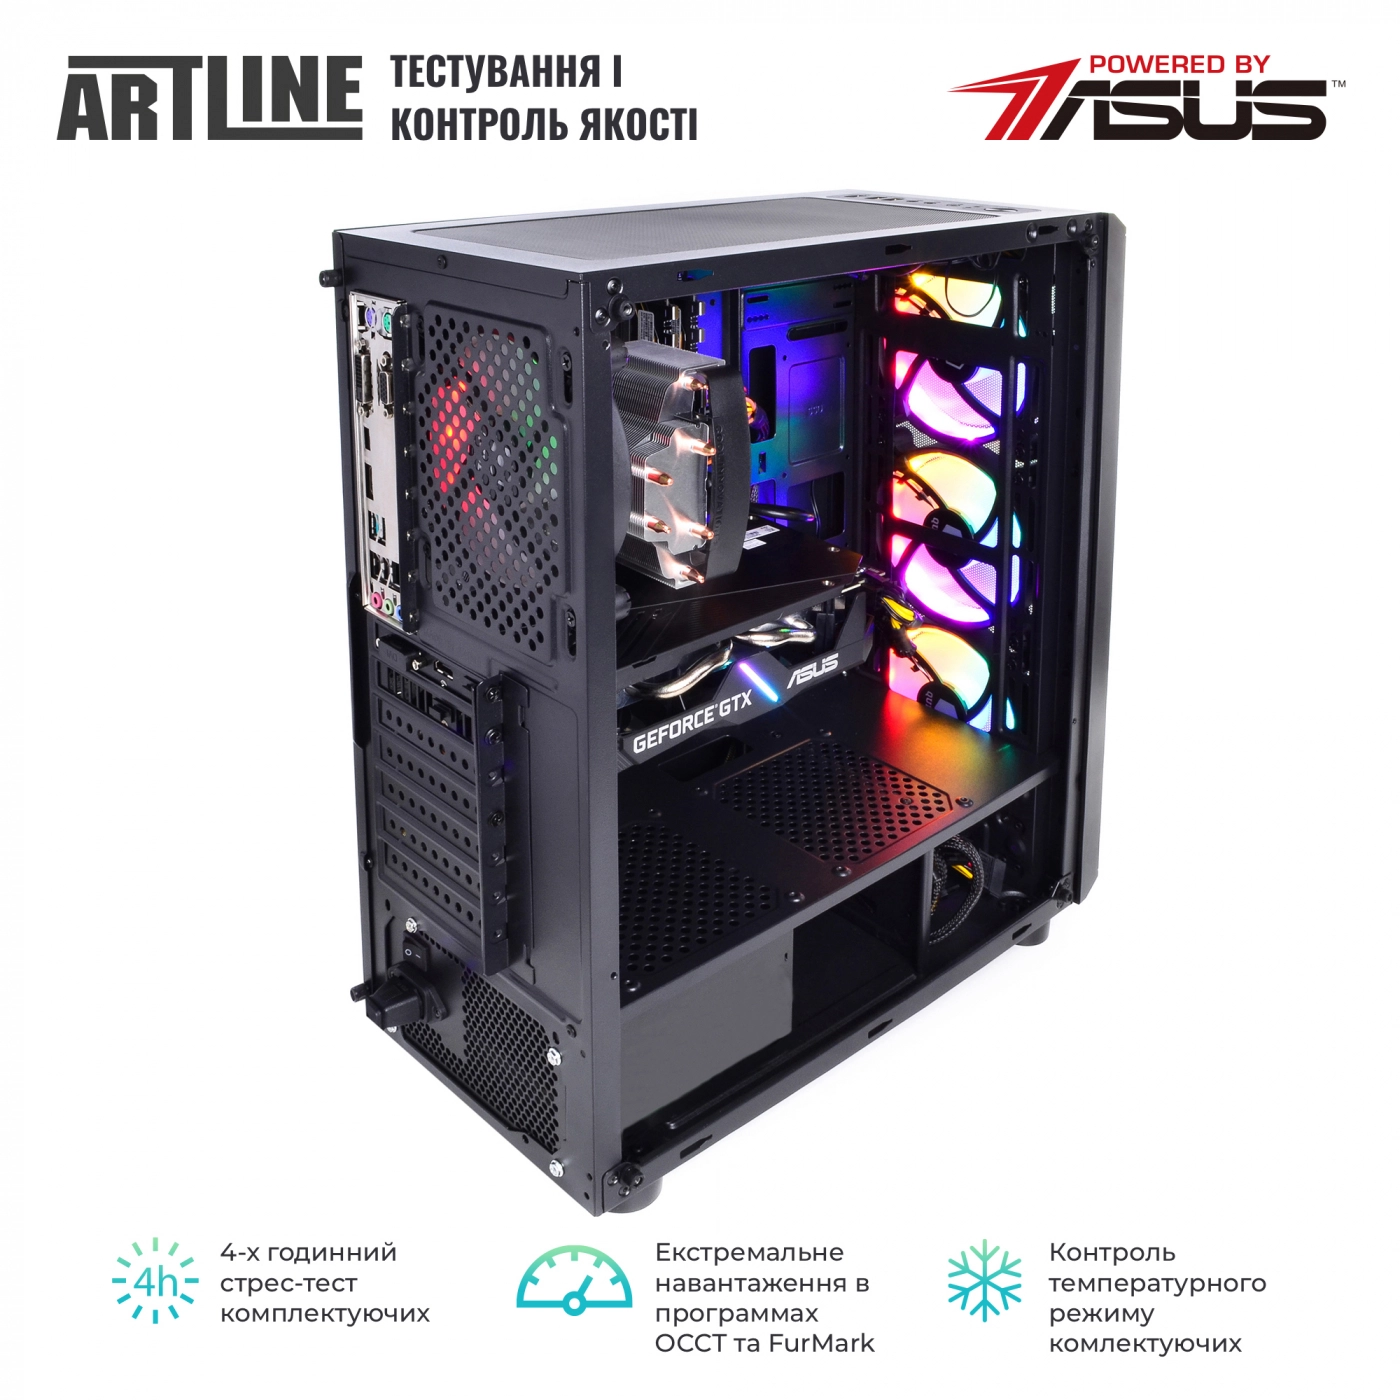 Купить Компьютер ARTLINE Gaming X39v46 - фото 6